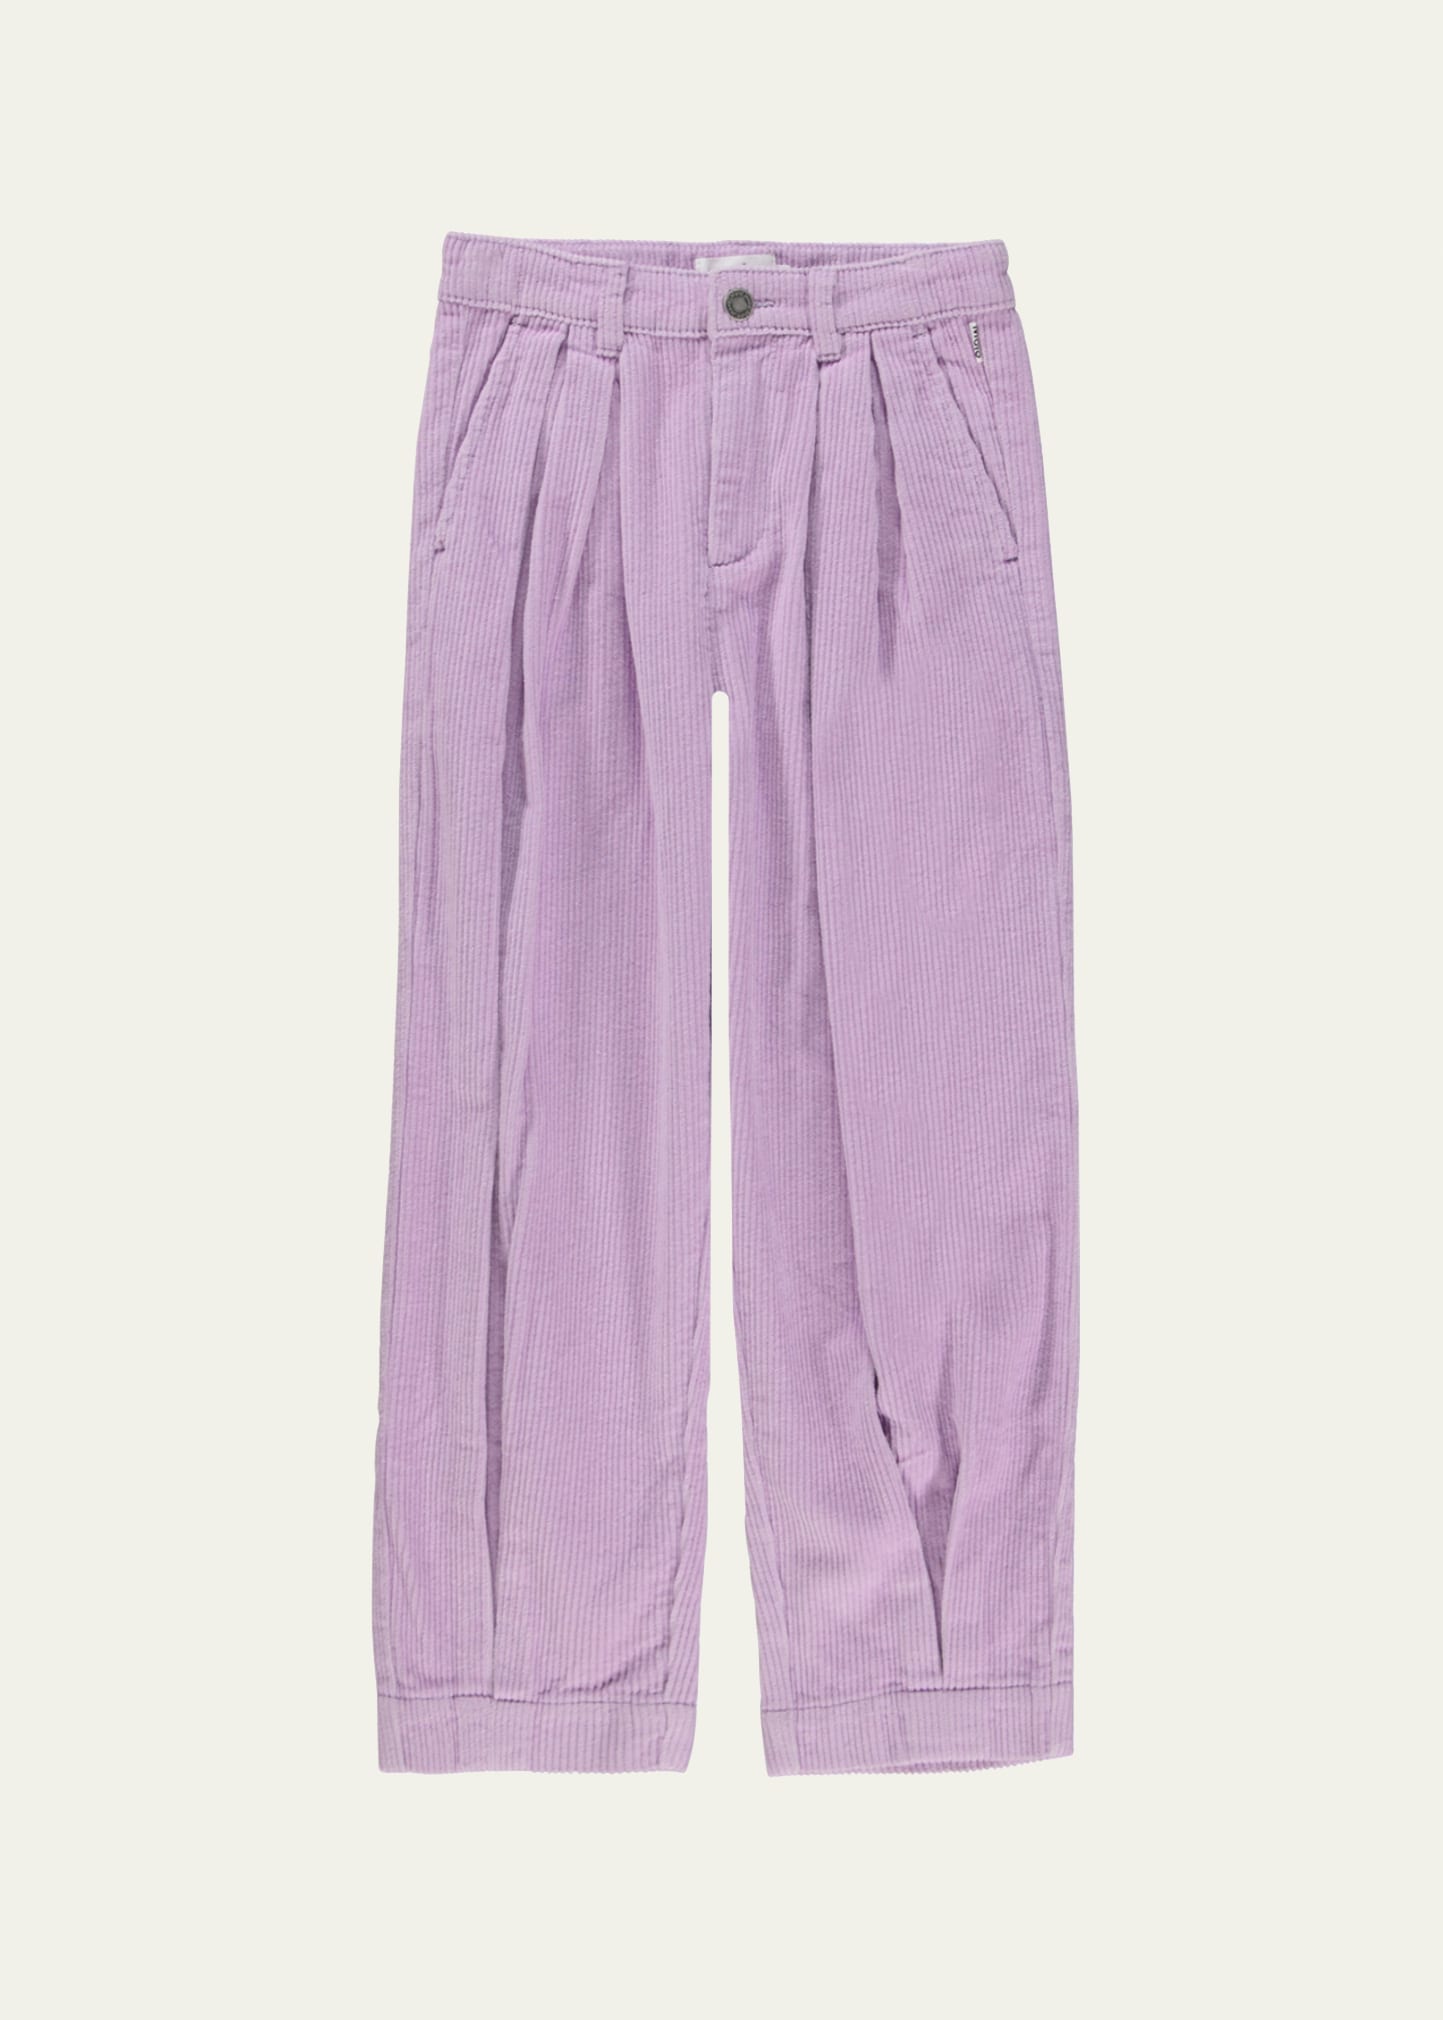 Girl's Aleen Corduroy Pants, Size 8-16